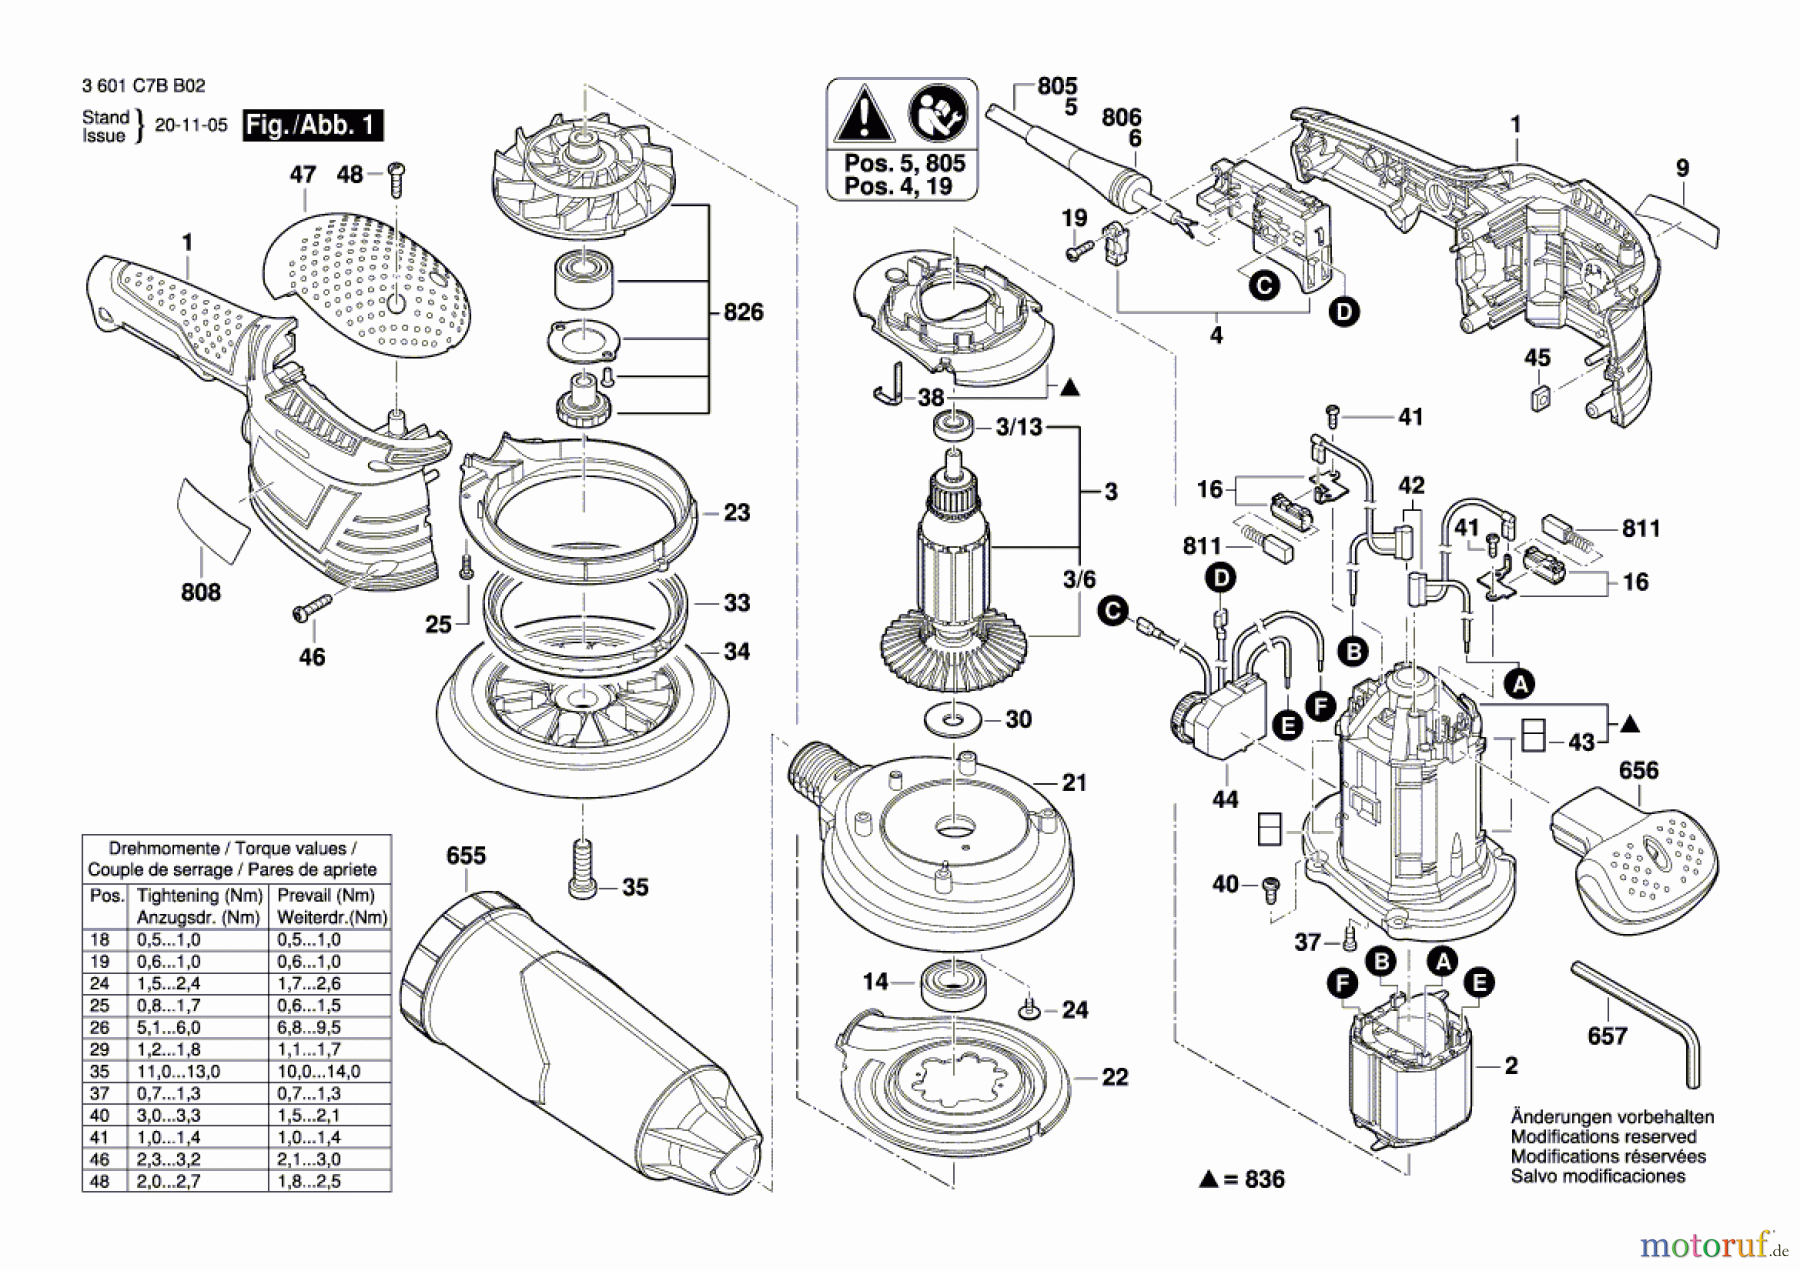  Bosch Werkzeug Exzenterschleifer BROS 150-2 Seite 1